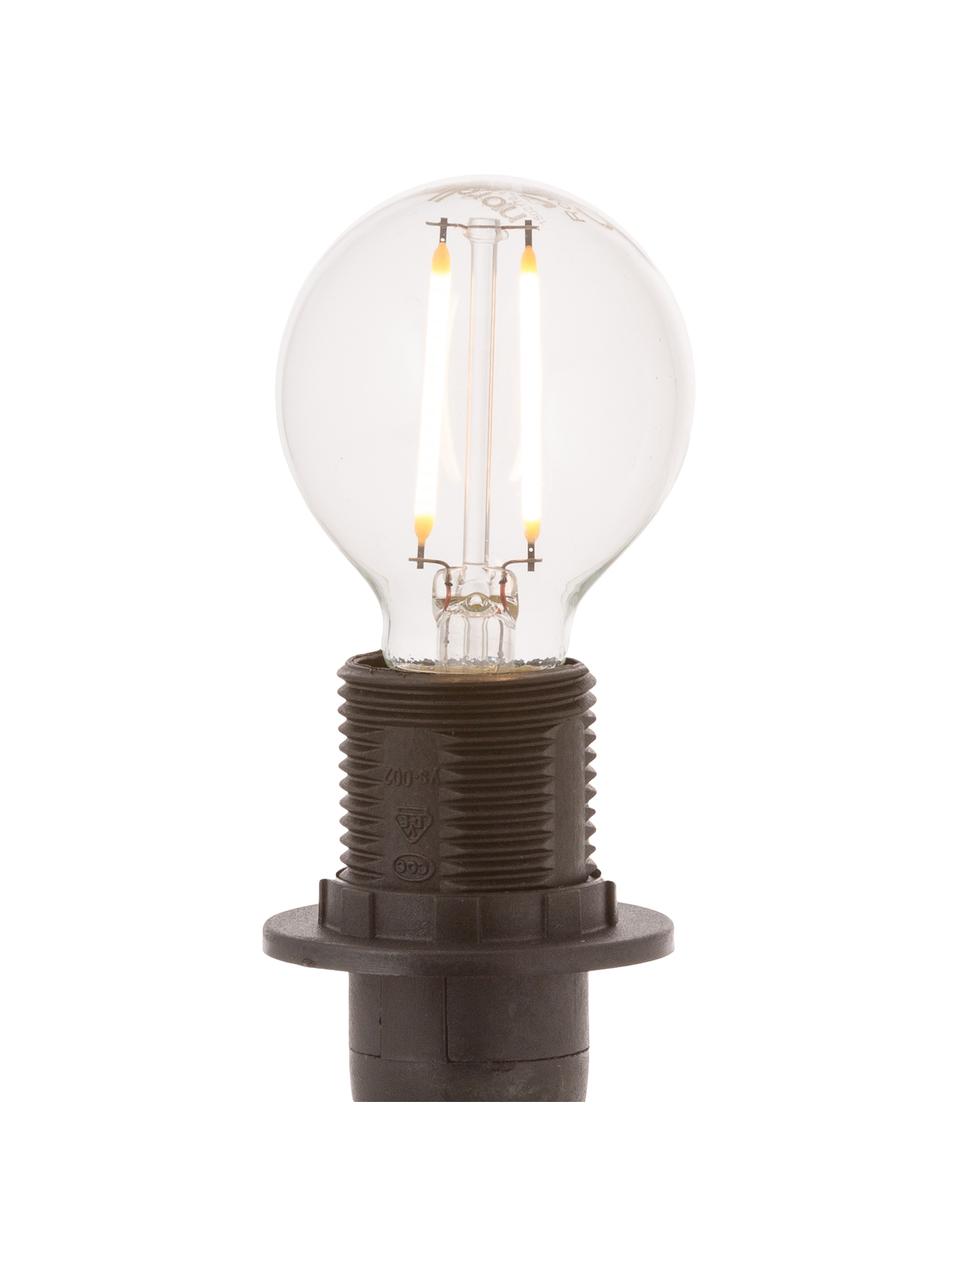 E14 Leuchtmittel, 2.5W, warmweiß, 1 Stück, Leuchtmittelschirm: Glas, Leuchtmittelfassung: Aluminium, Transparent, Ø 5 x H 8 cm